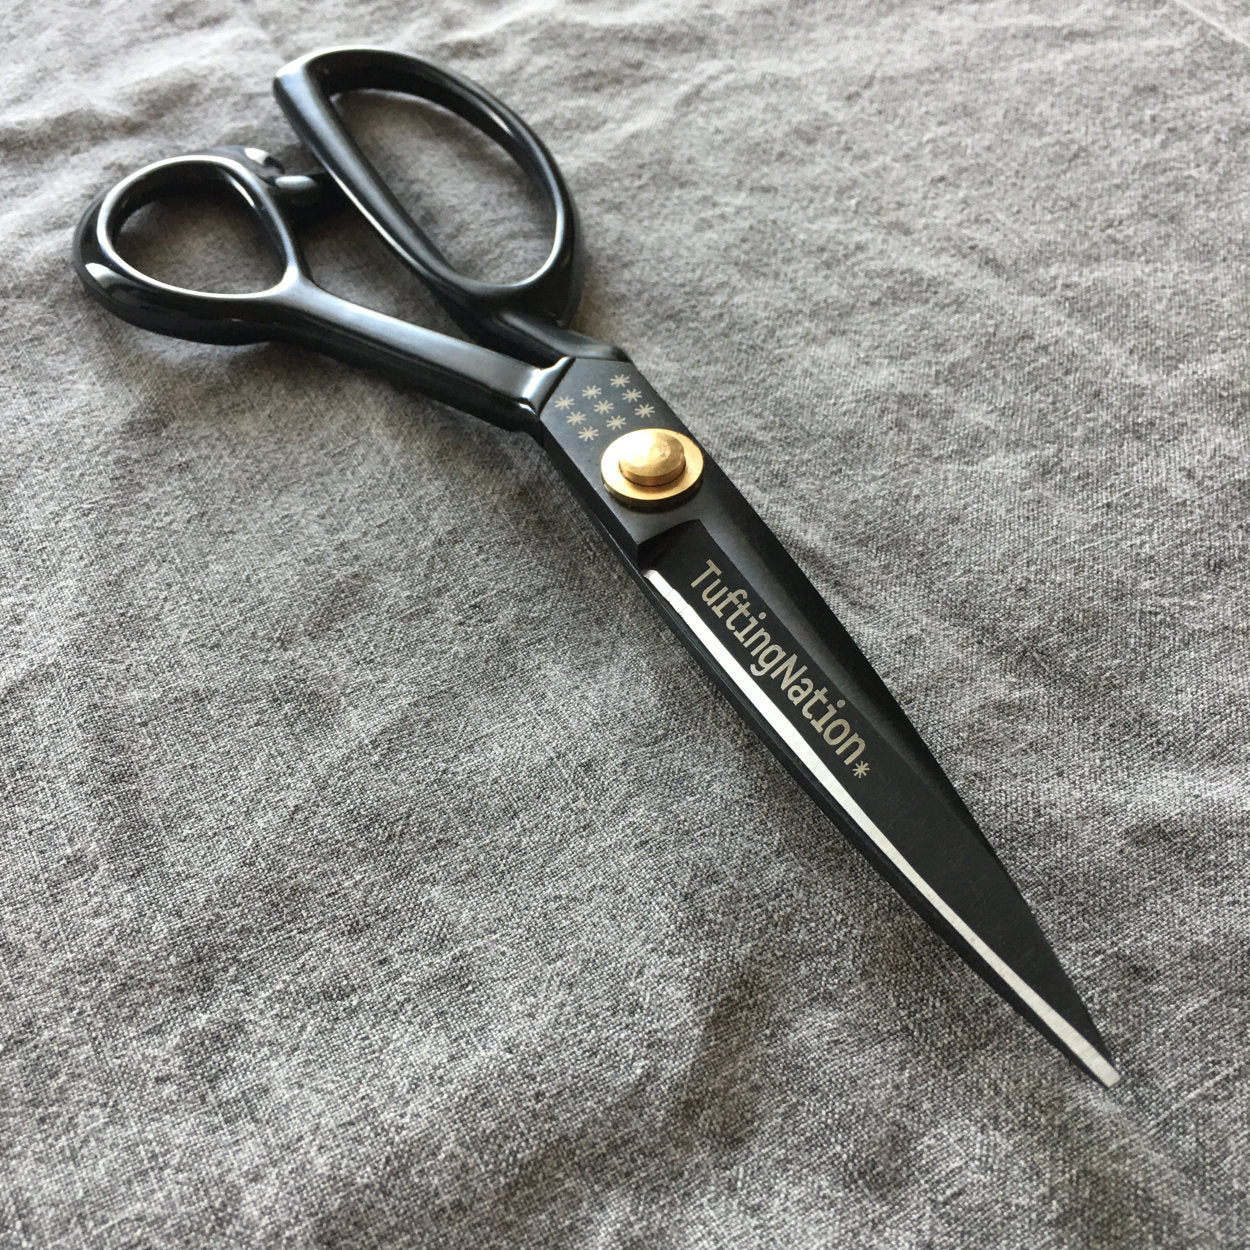 Bnjfv Tufting Carpet Scissors, Mini Portable Stainless Steel Duckbill Scissors For Cutting Carpet(black)